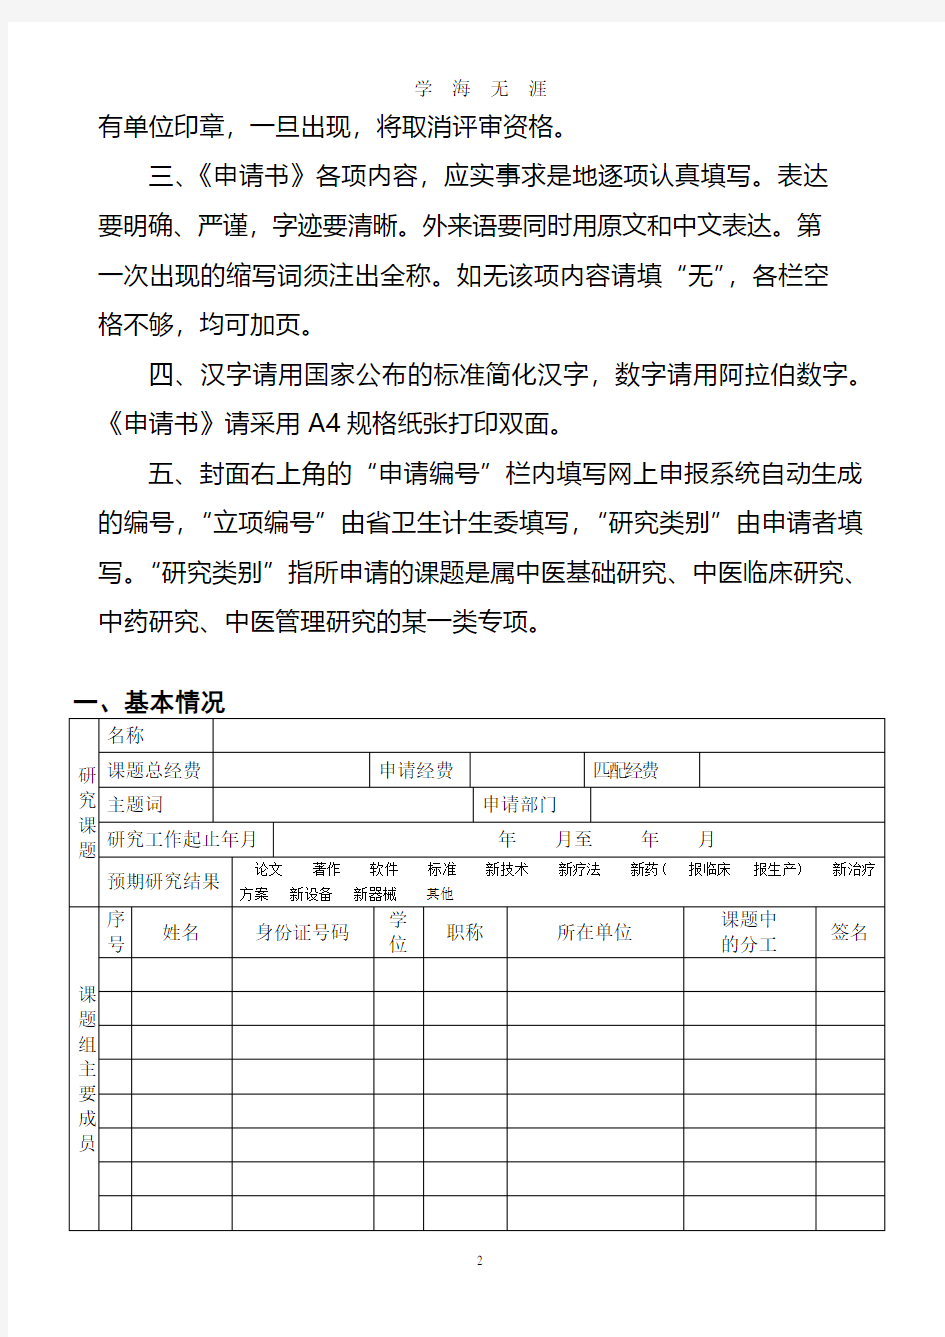 中医药科研课题申请书(2020年7月整理).pdf